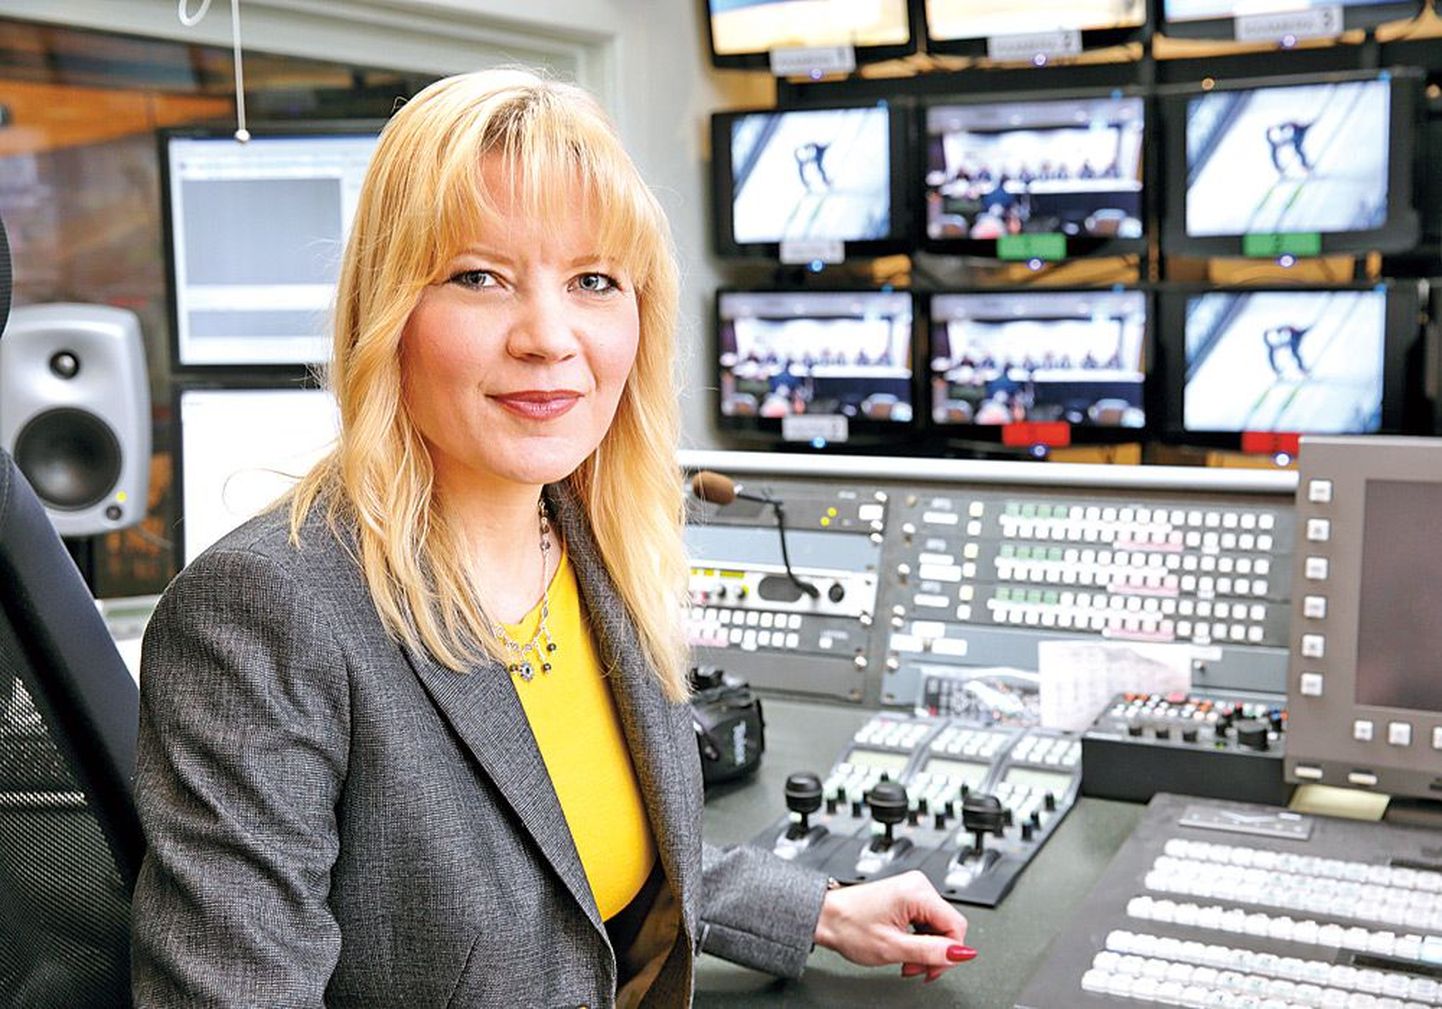 Kaameraga sina peal: Anu Säärits valmistub telestuudios peagi eetrisse minema.